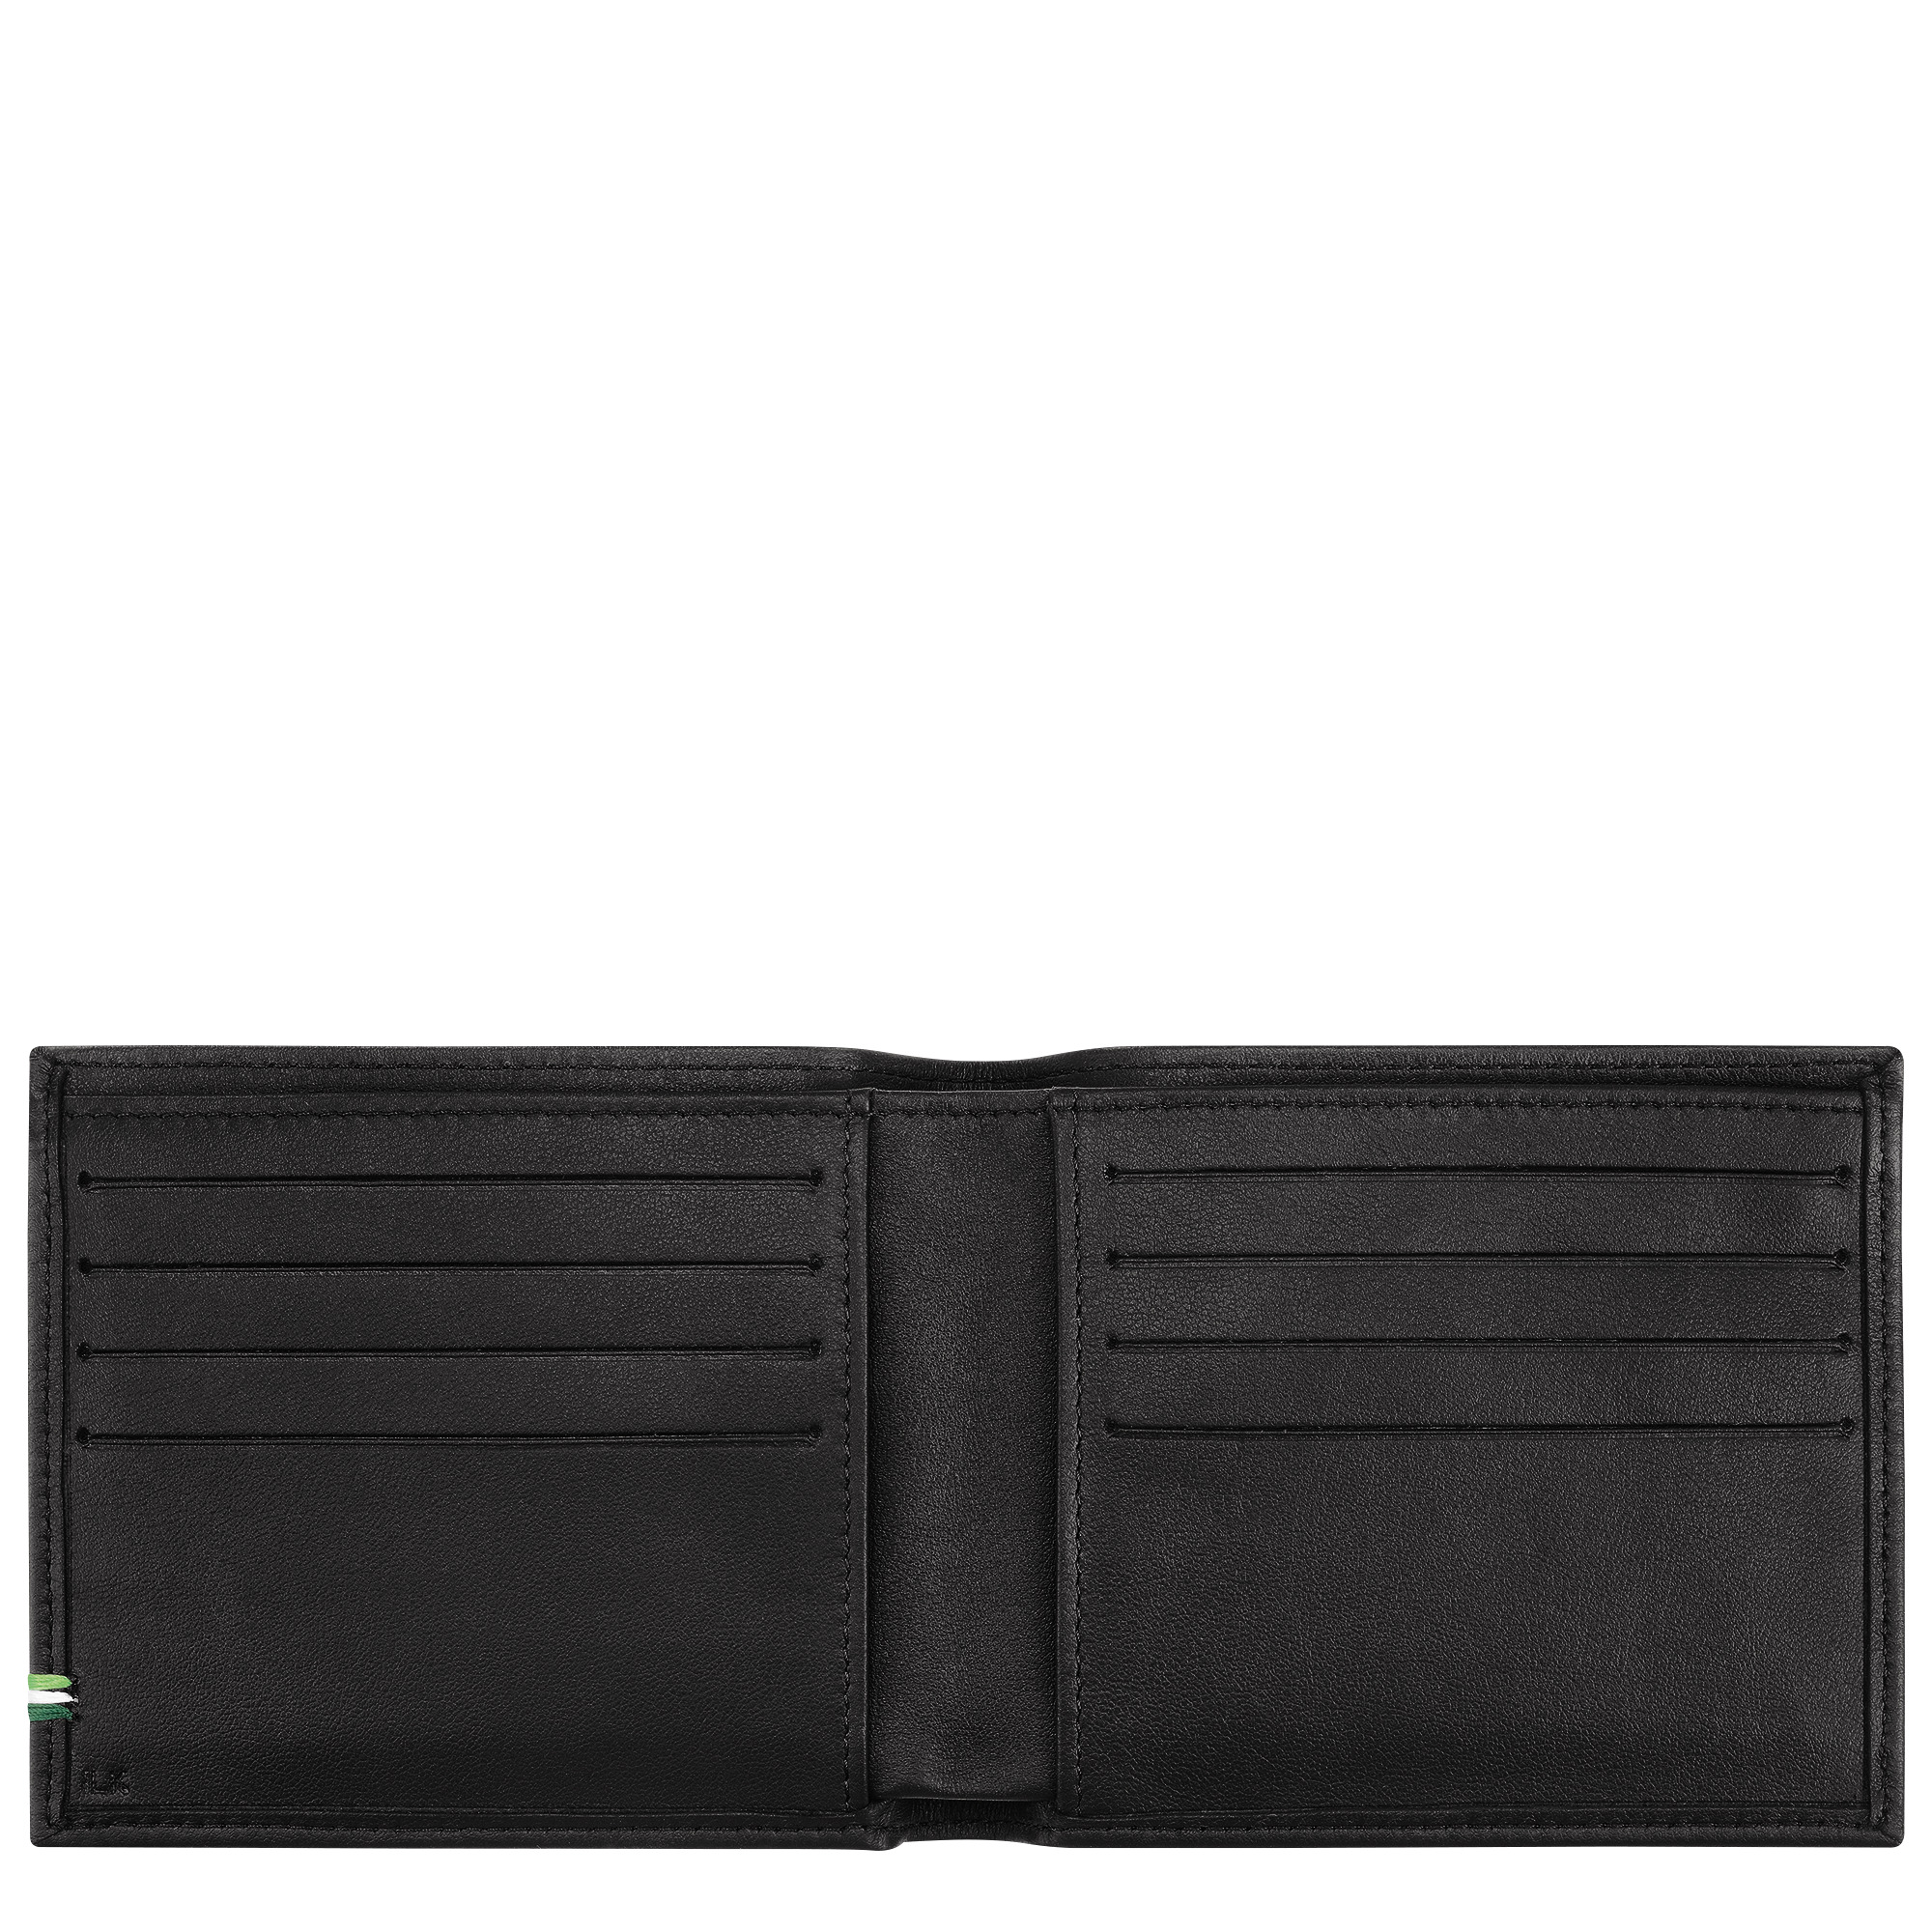 Longchamp sur Seine Wallet Black - Leather - 3